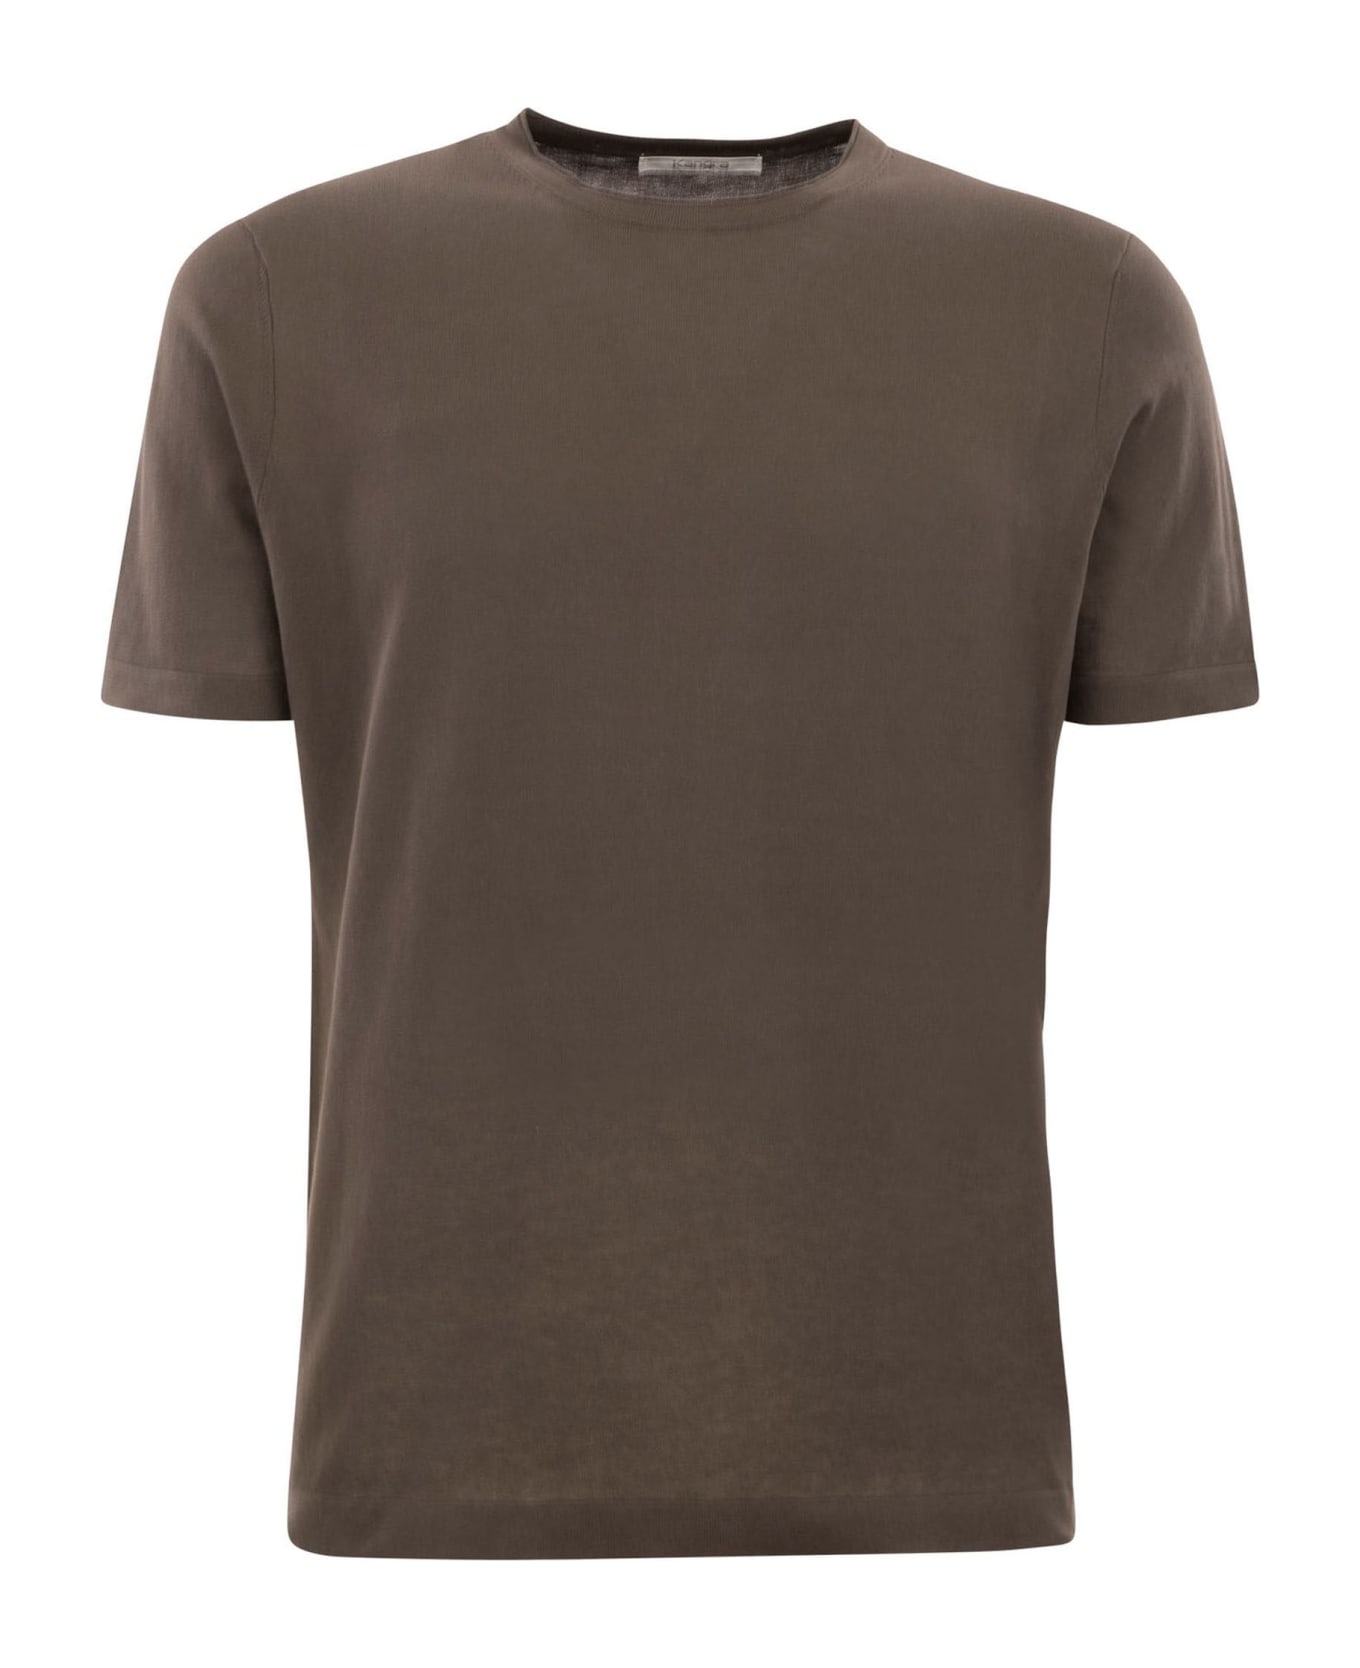 Kangra Brown Cotton Ribbed T-shirt - Brown